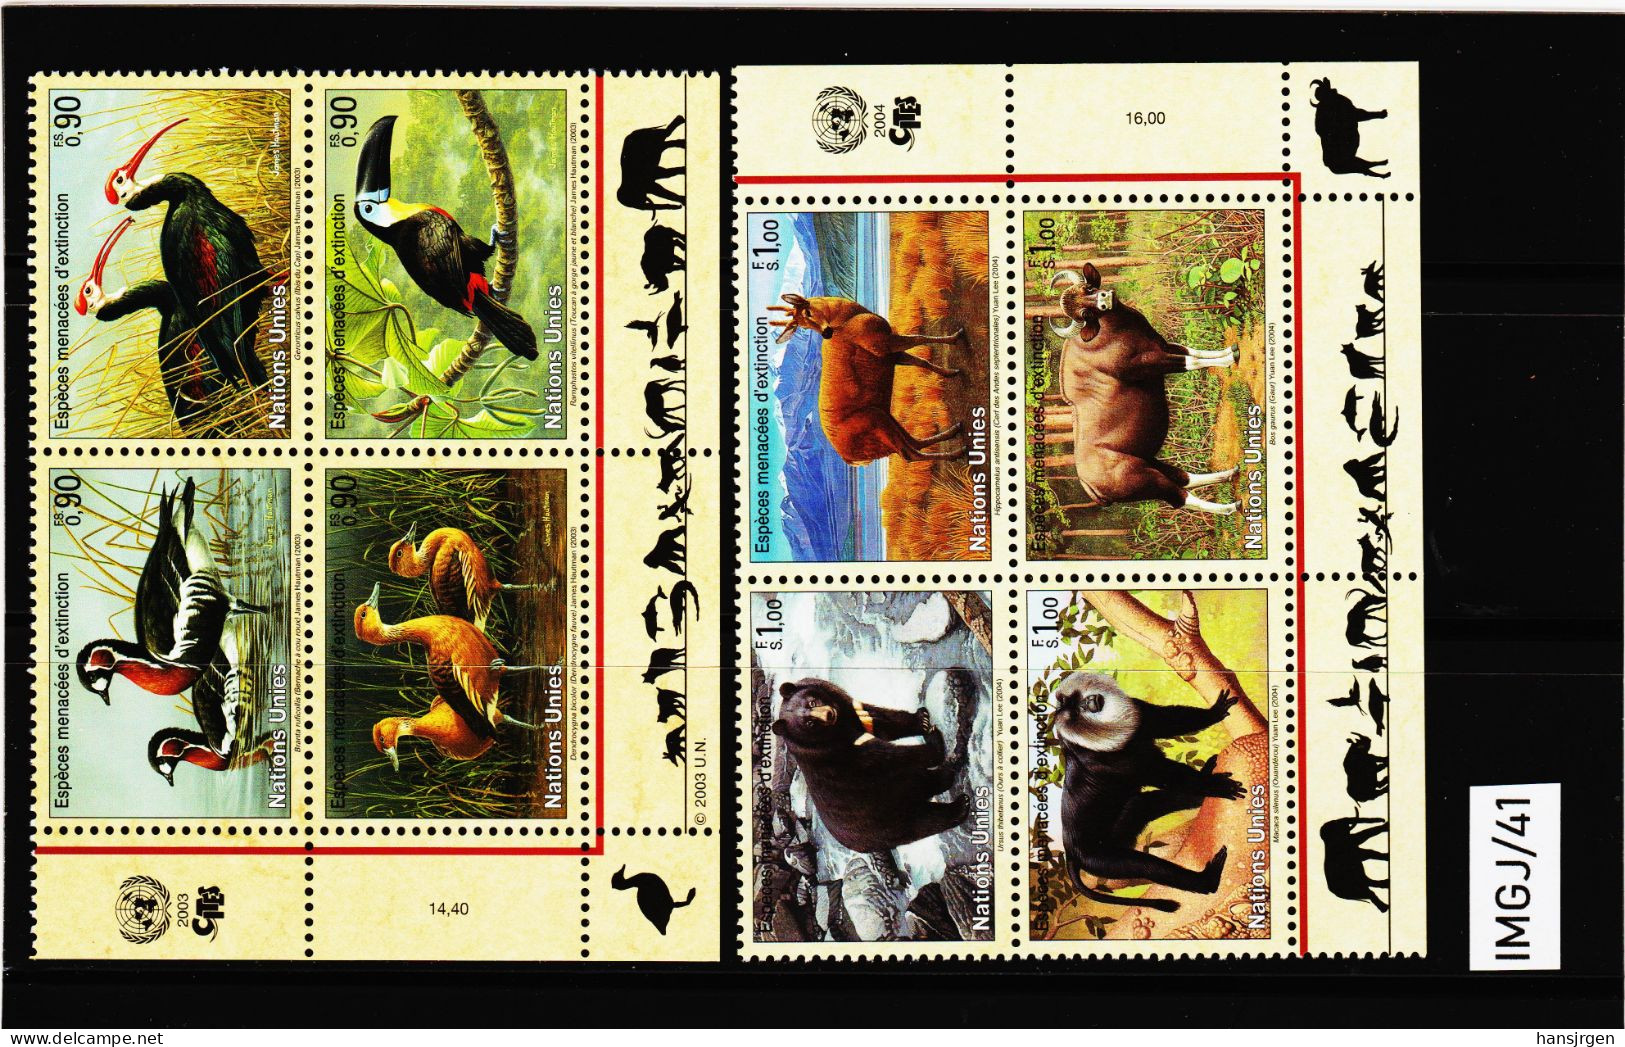 IMGJ/41 UNO GENF 2003/04 MICHL 466/69 + 482/85 VIERERBLÖCKE  Postfrisch ** SIEHE ABBILDUNG - Unused Stamps